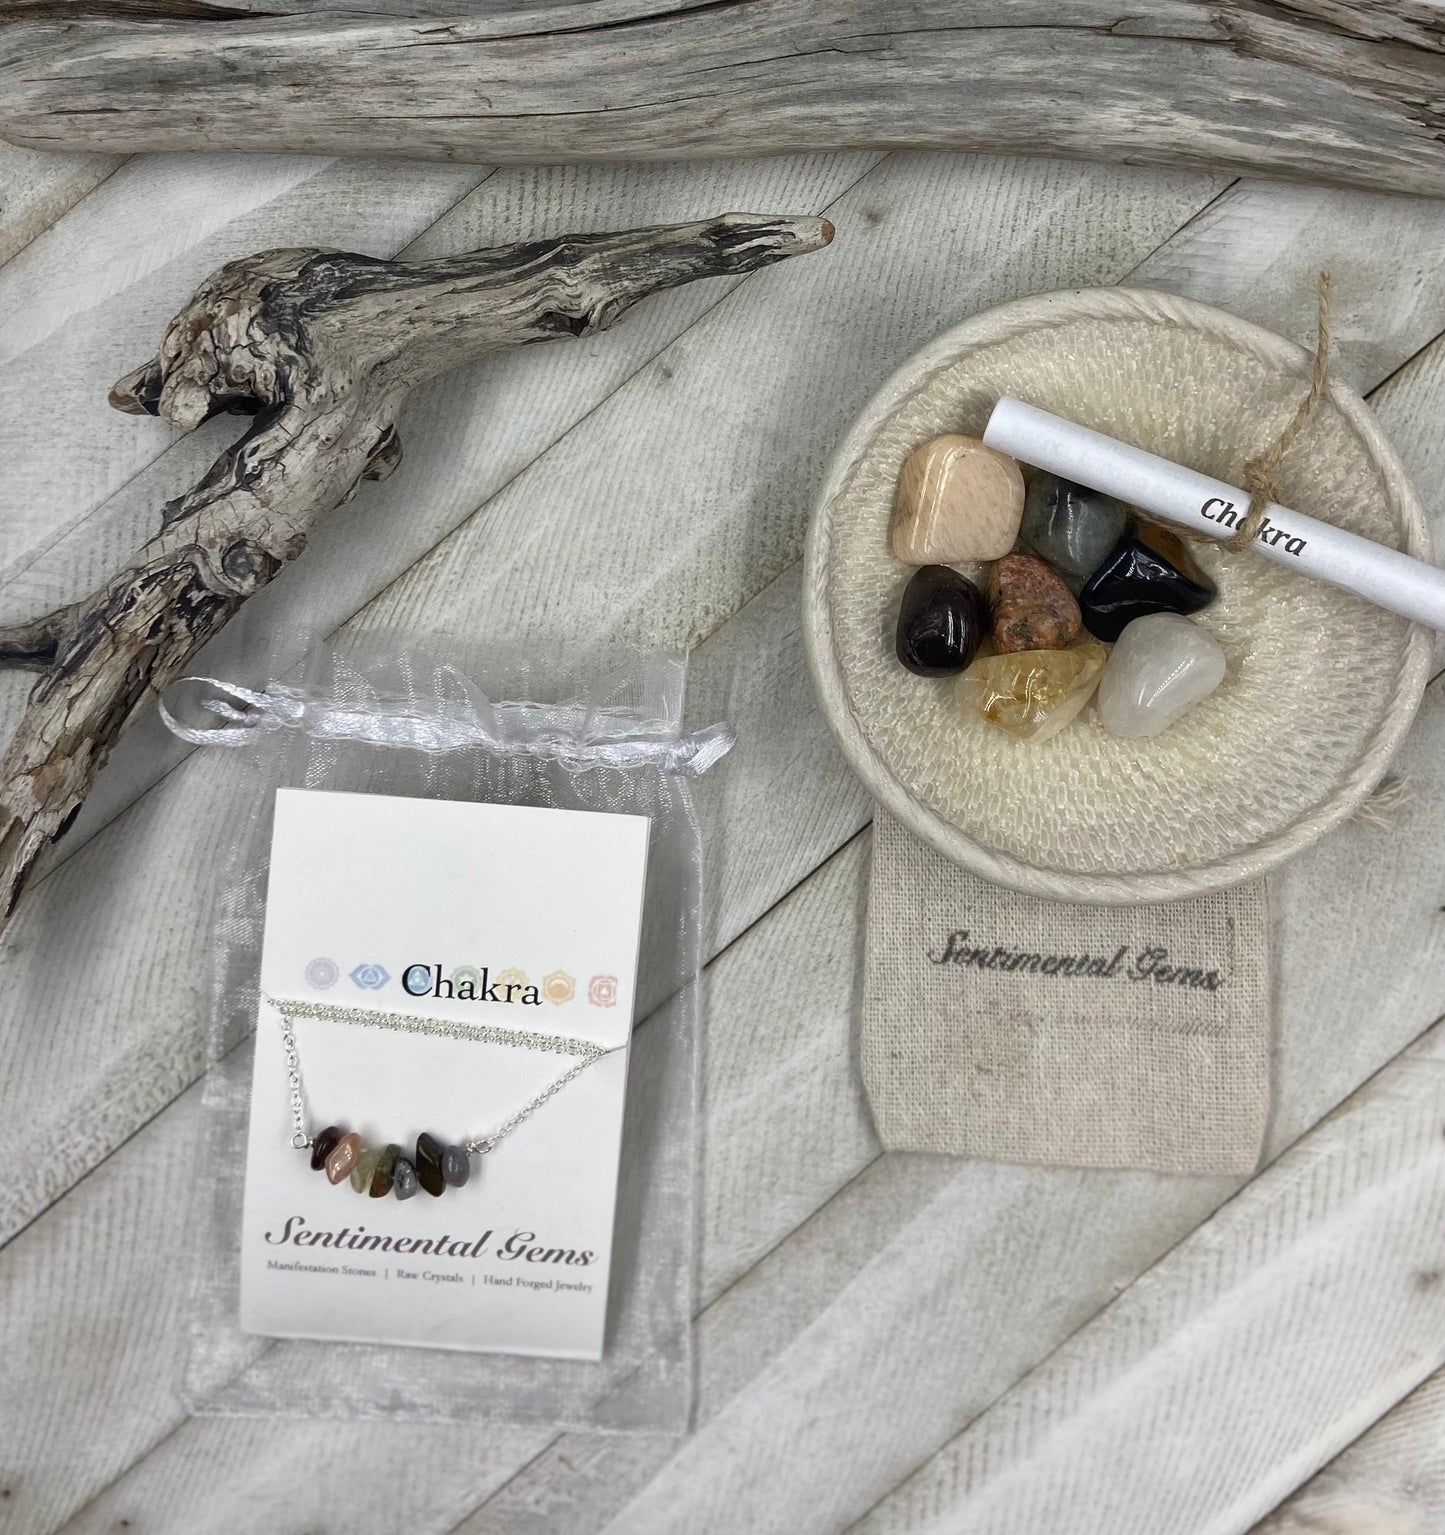 Chakra Crystal Kit for Positive Energy and Balance